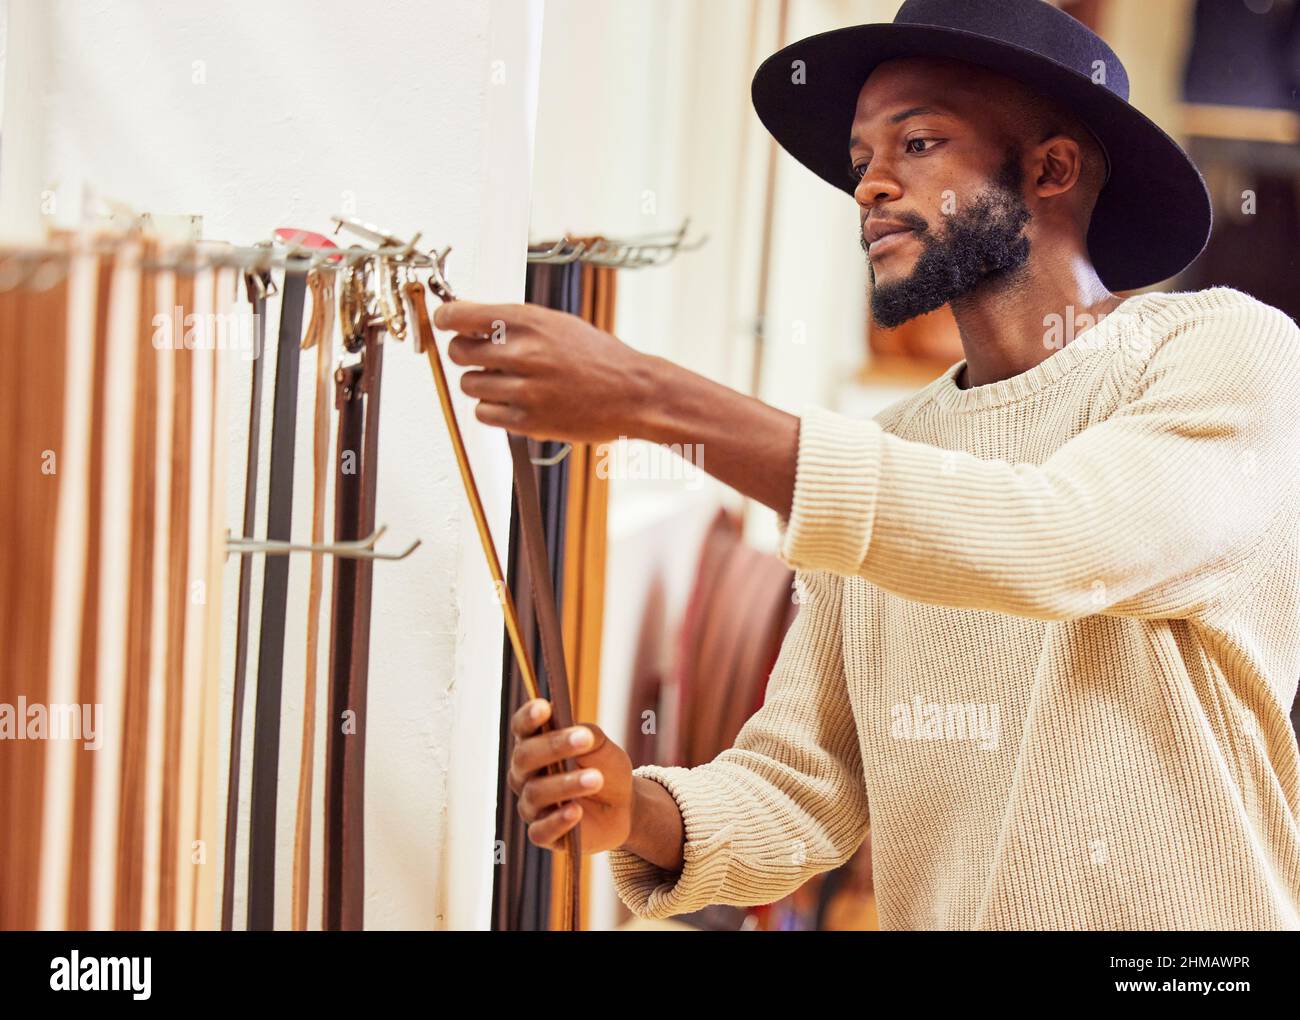 Le talent ne compte pour rien sans travail acharné. Photo d'un jeune homme travaillant à son travail dans un magasin. Banque D'Images